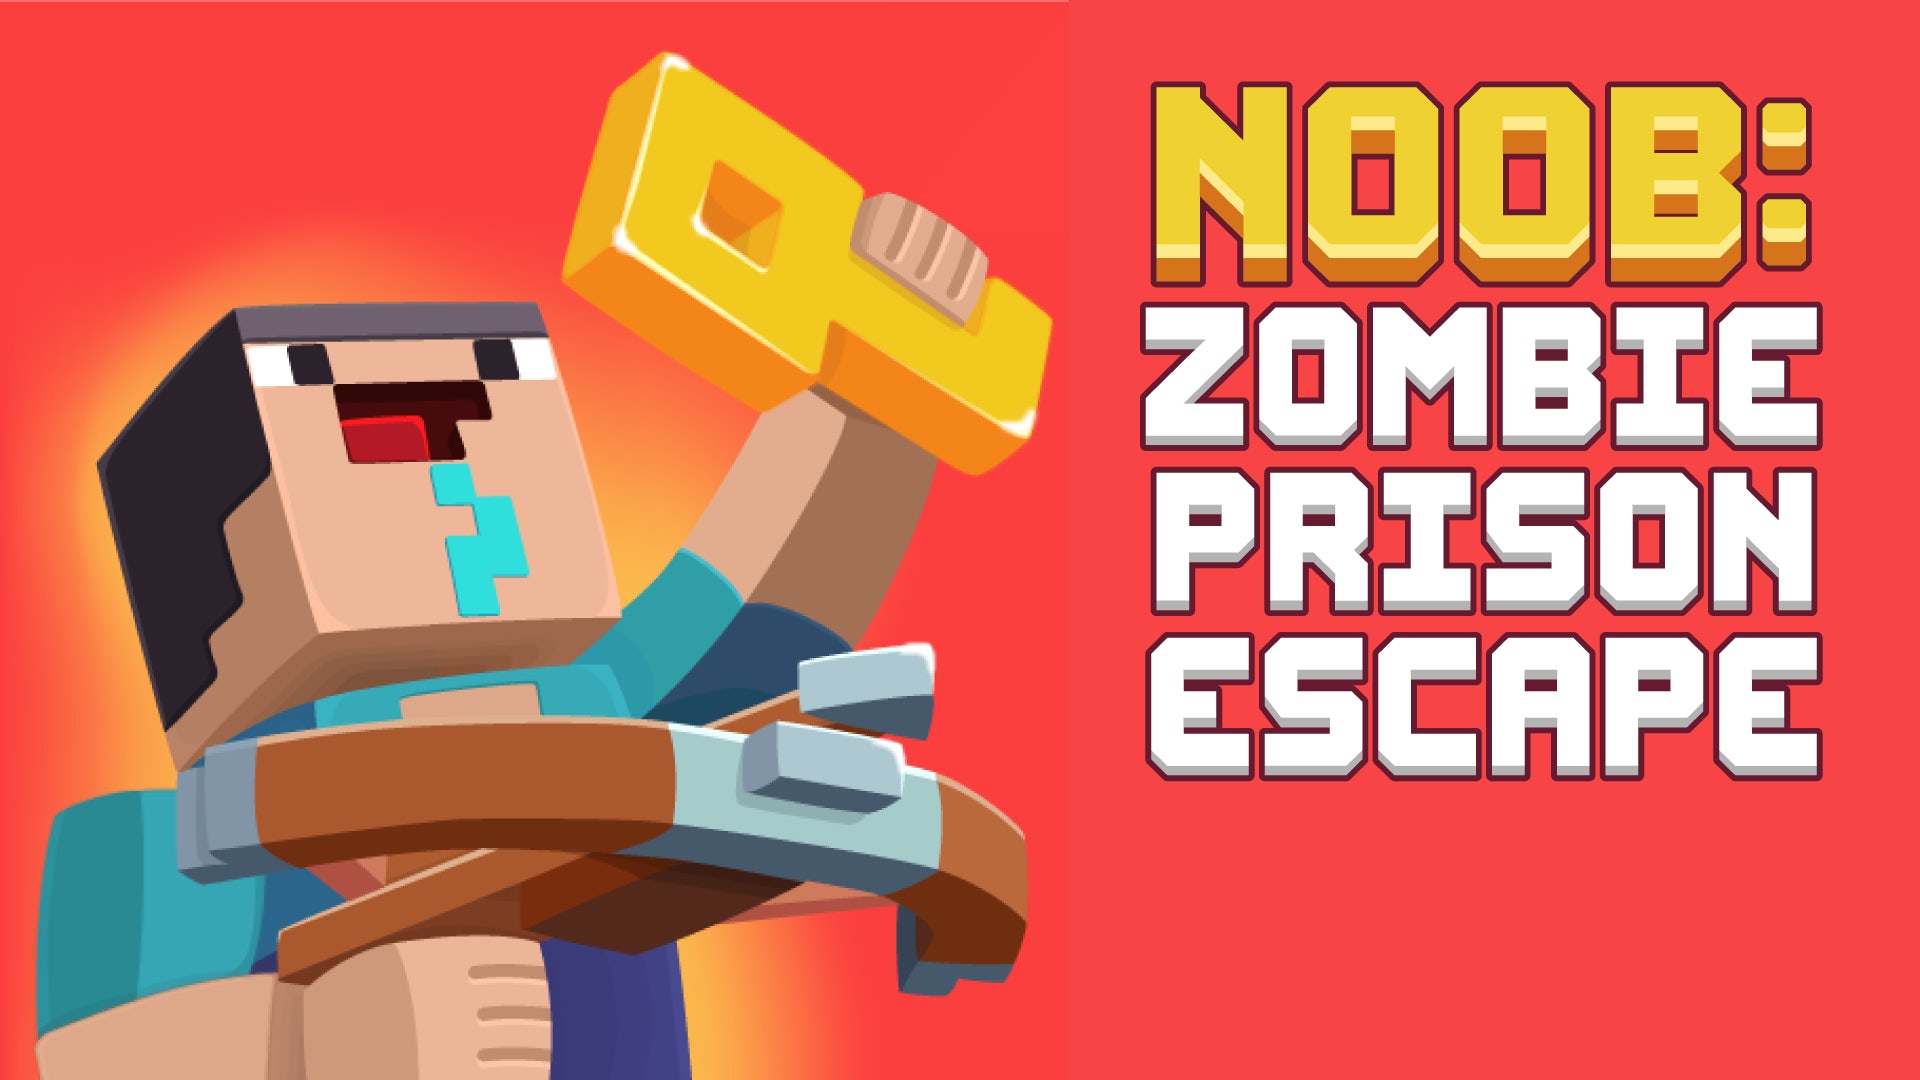 Noob: Zombie Prison Escape